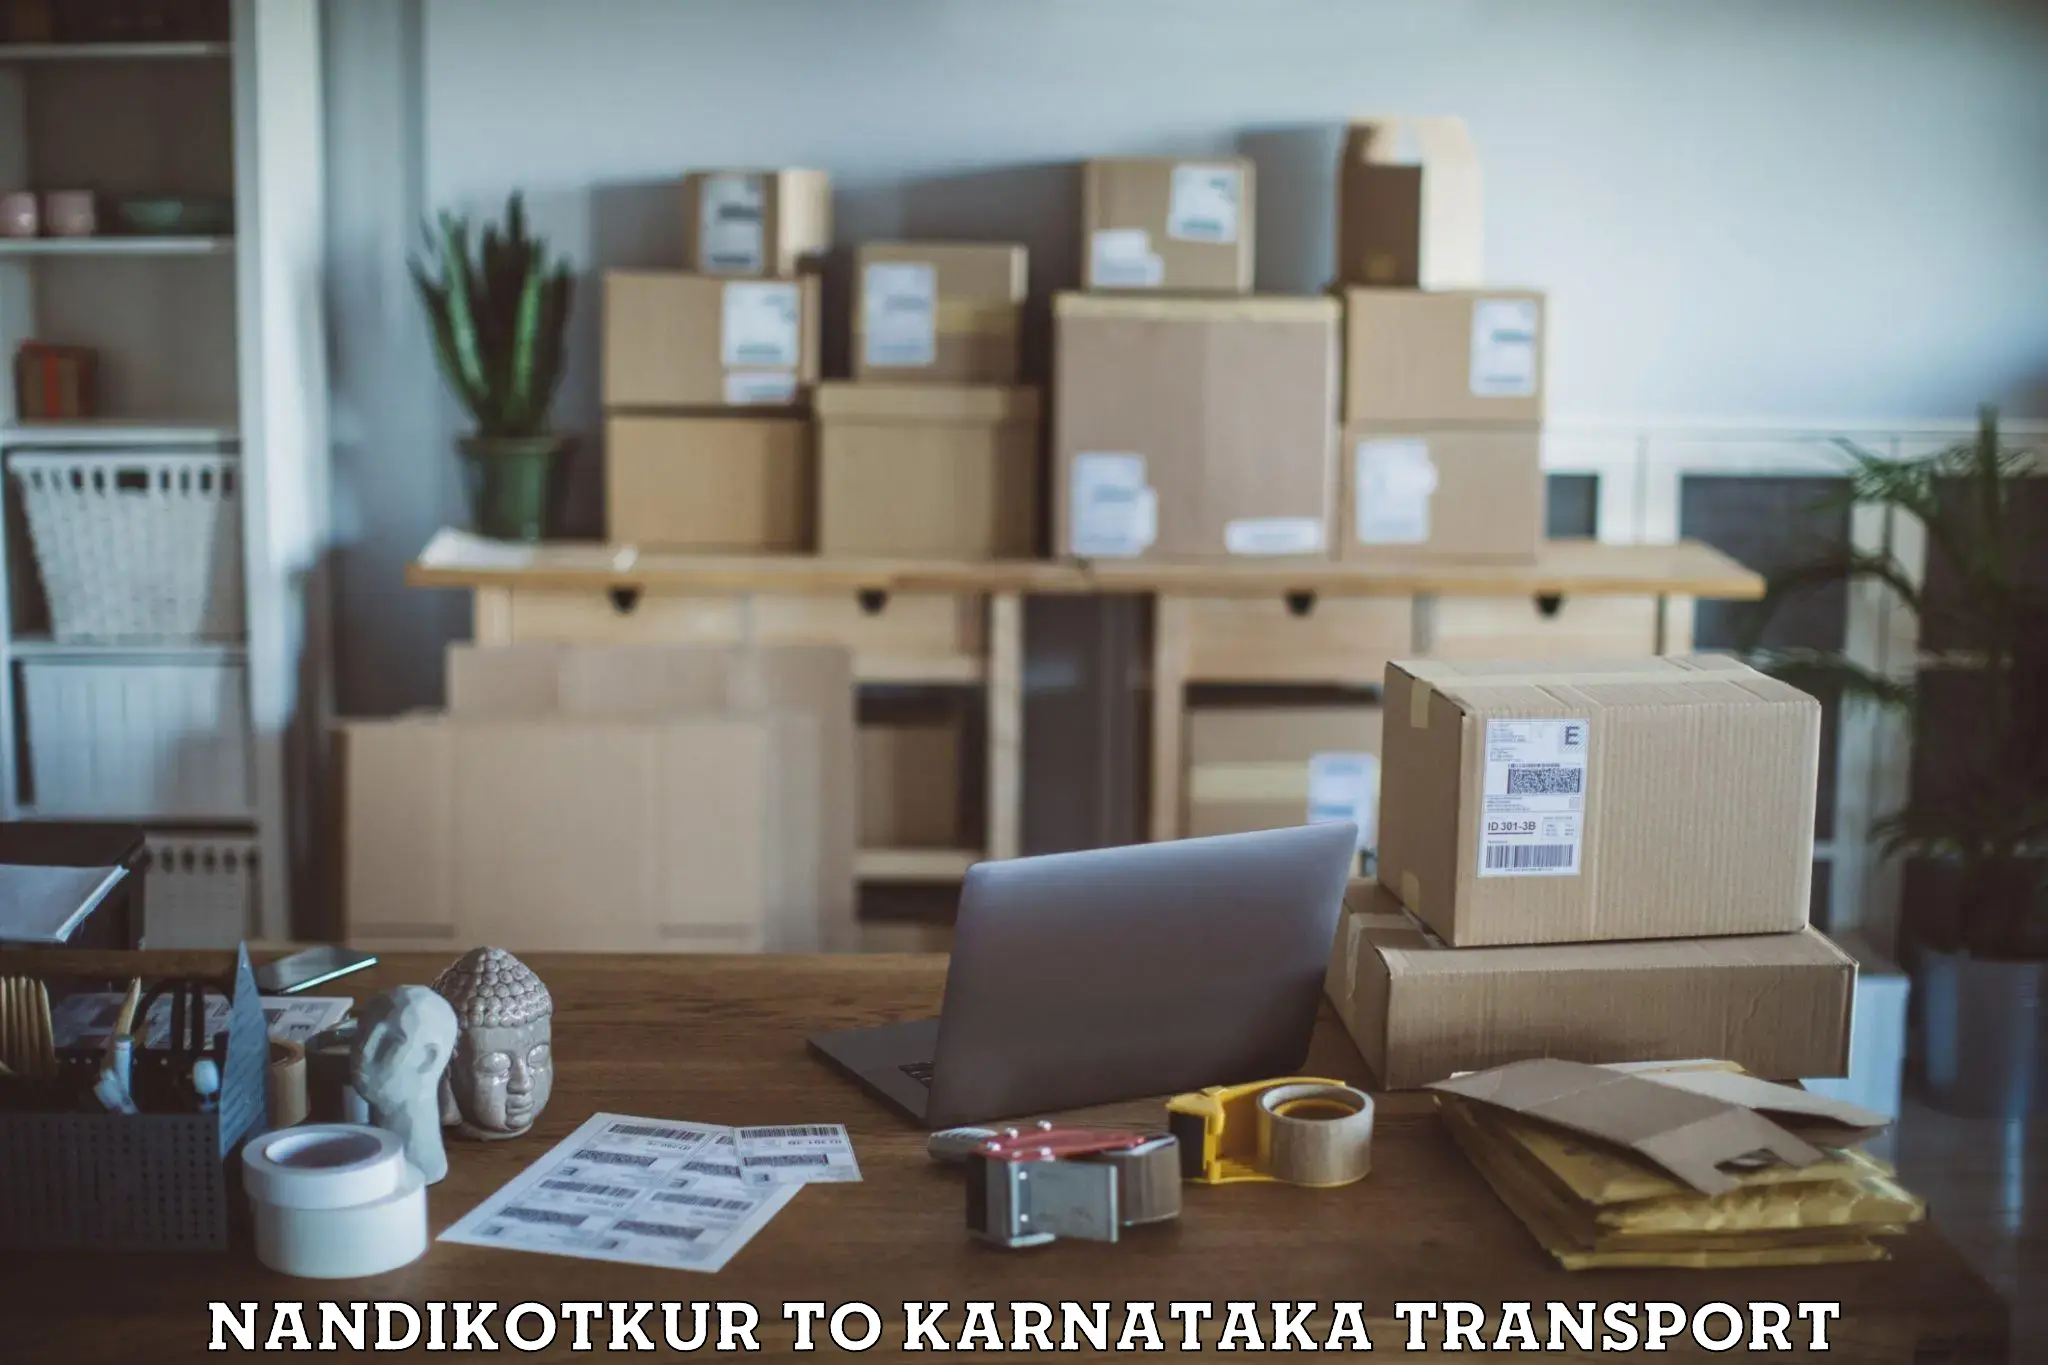 Cargo train transport services Nandikotkur to Karnataka